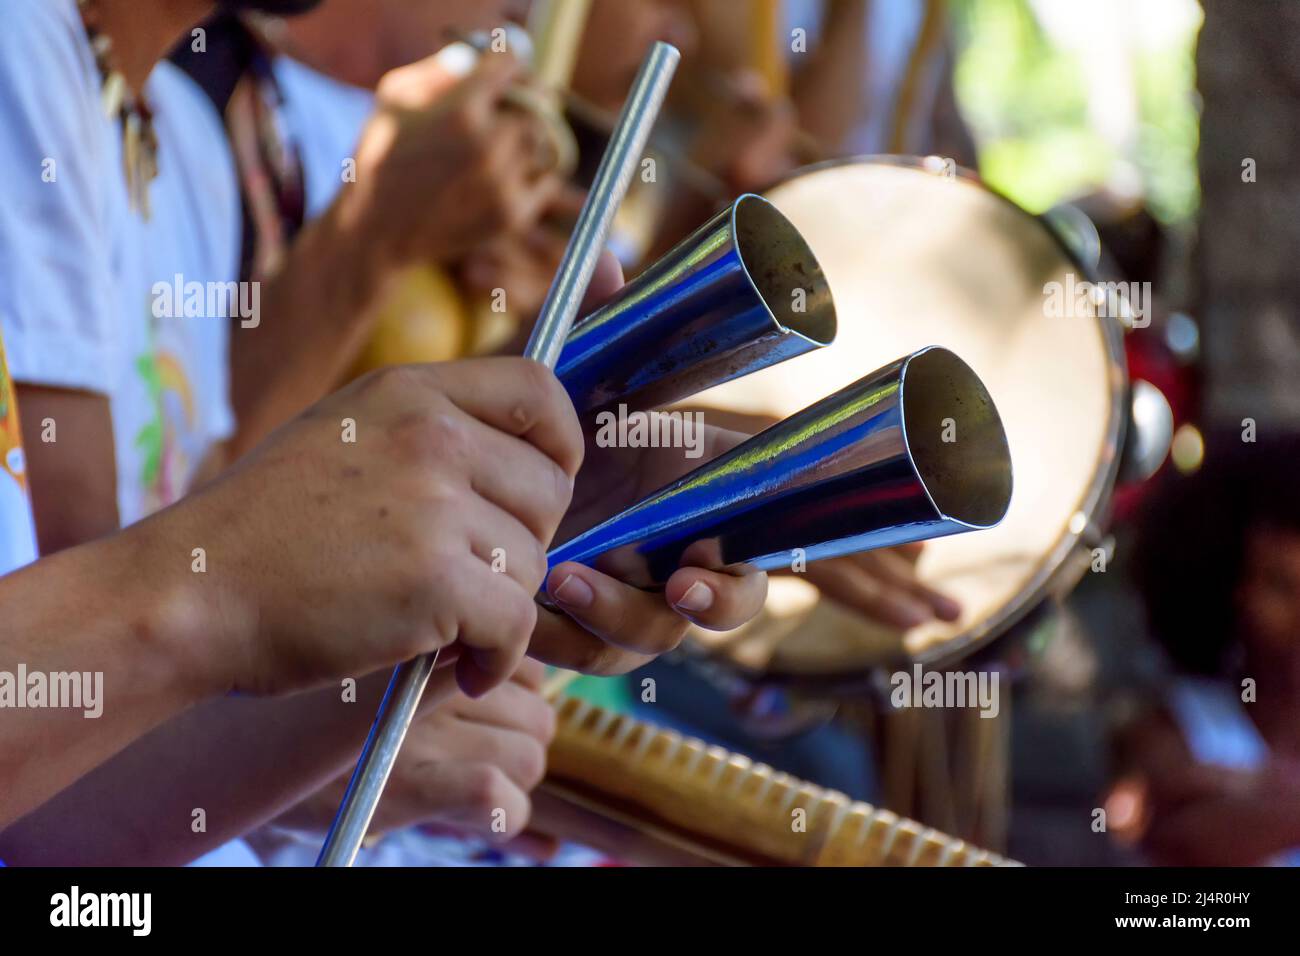 Schlagzeuginstrument aus Metall, das in brasilianischer Samba-Musik  verwendet wird Stockfotografie - Alamy